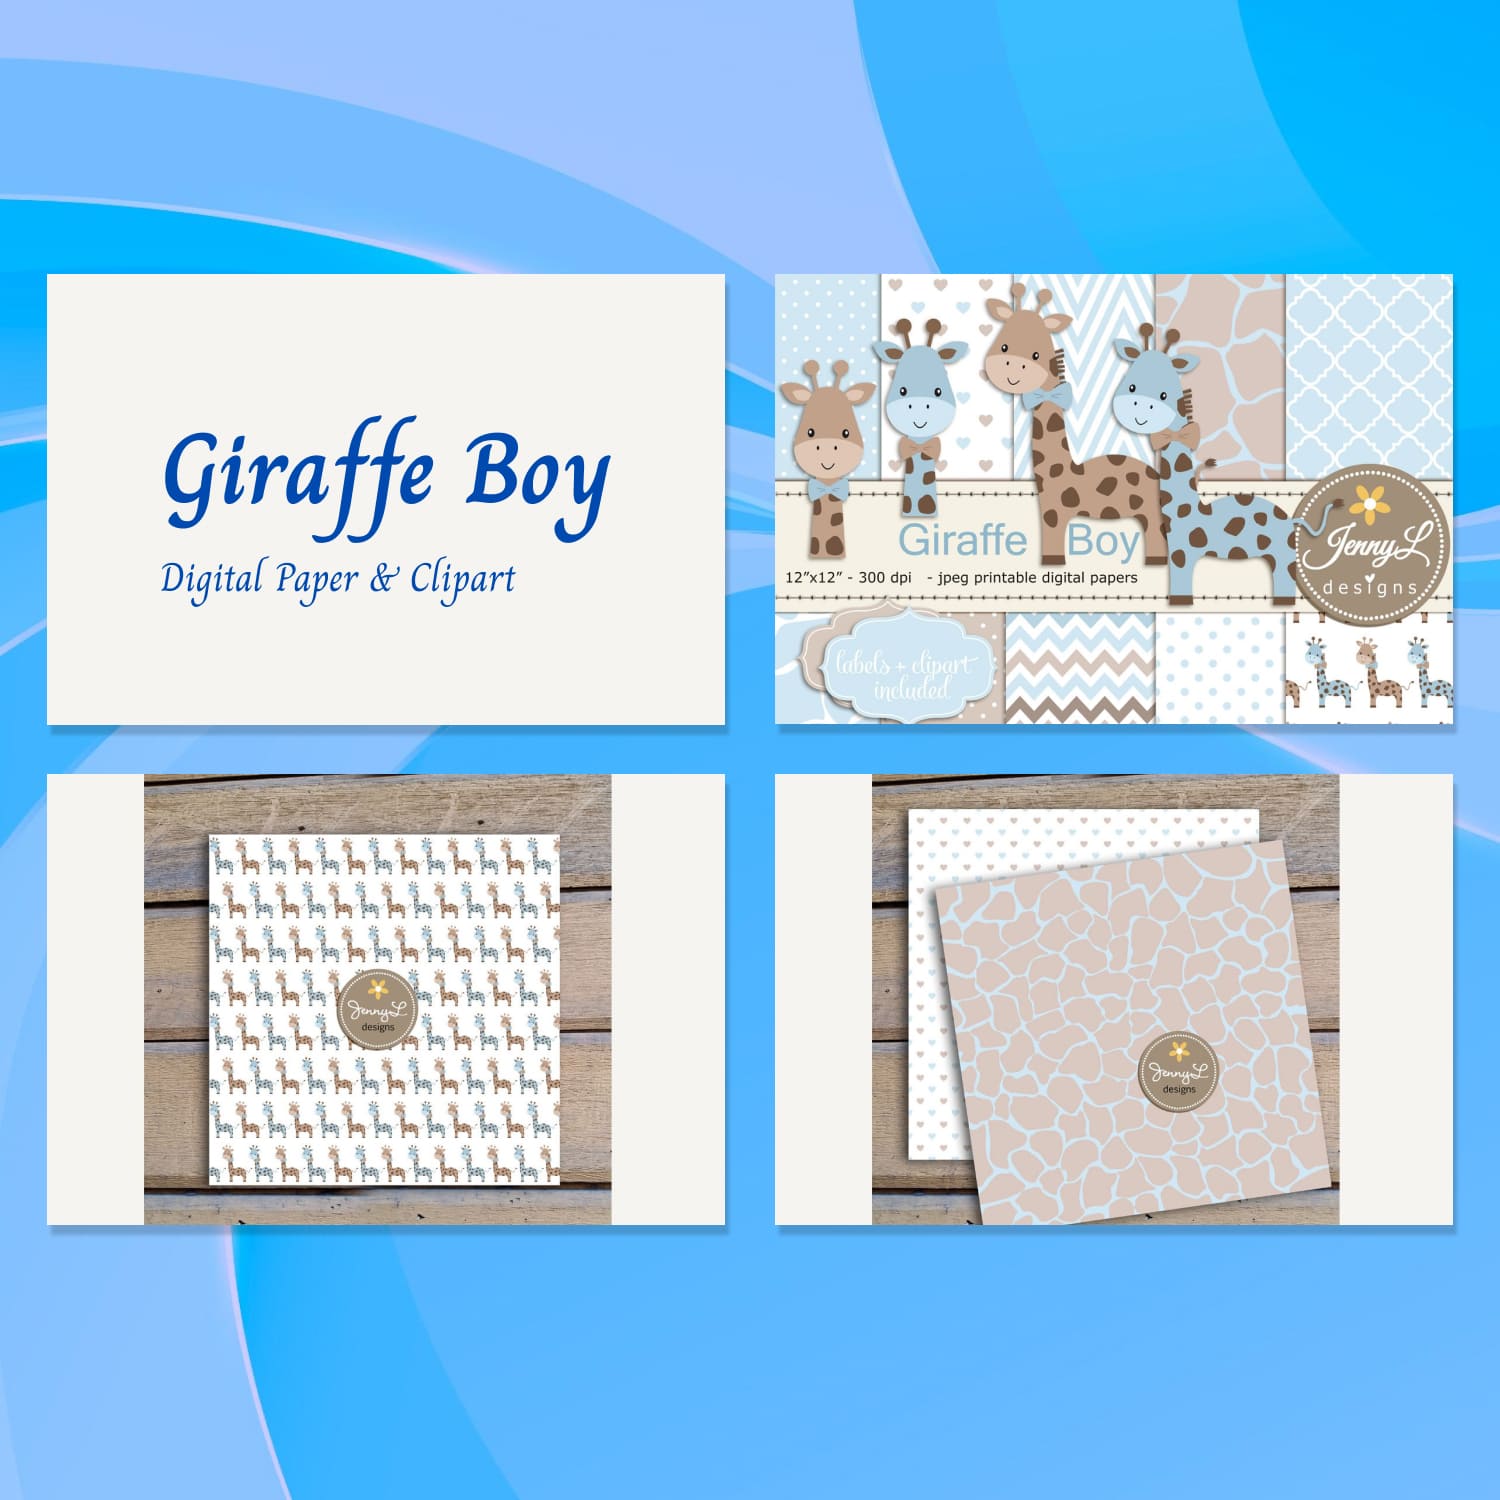 Giraffe Boy Digital Paper Clipart 01.